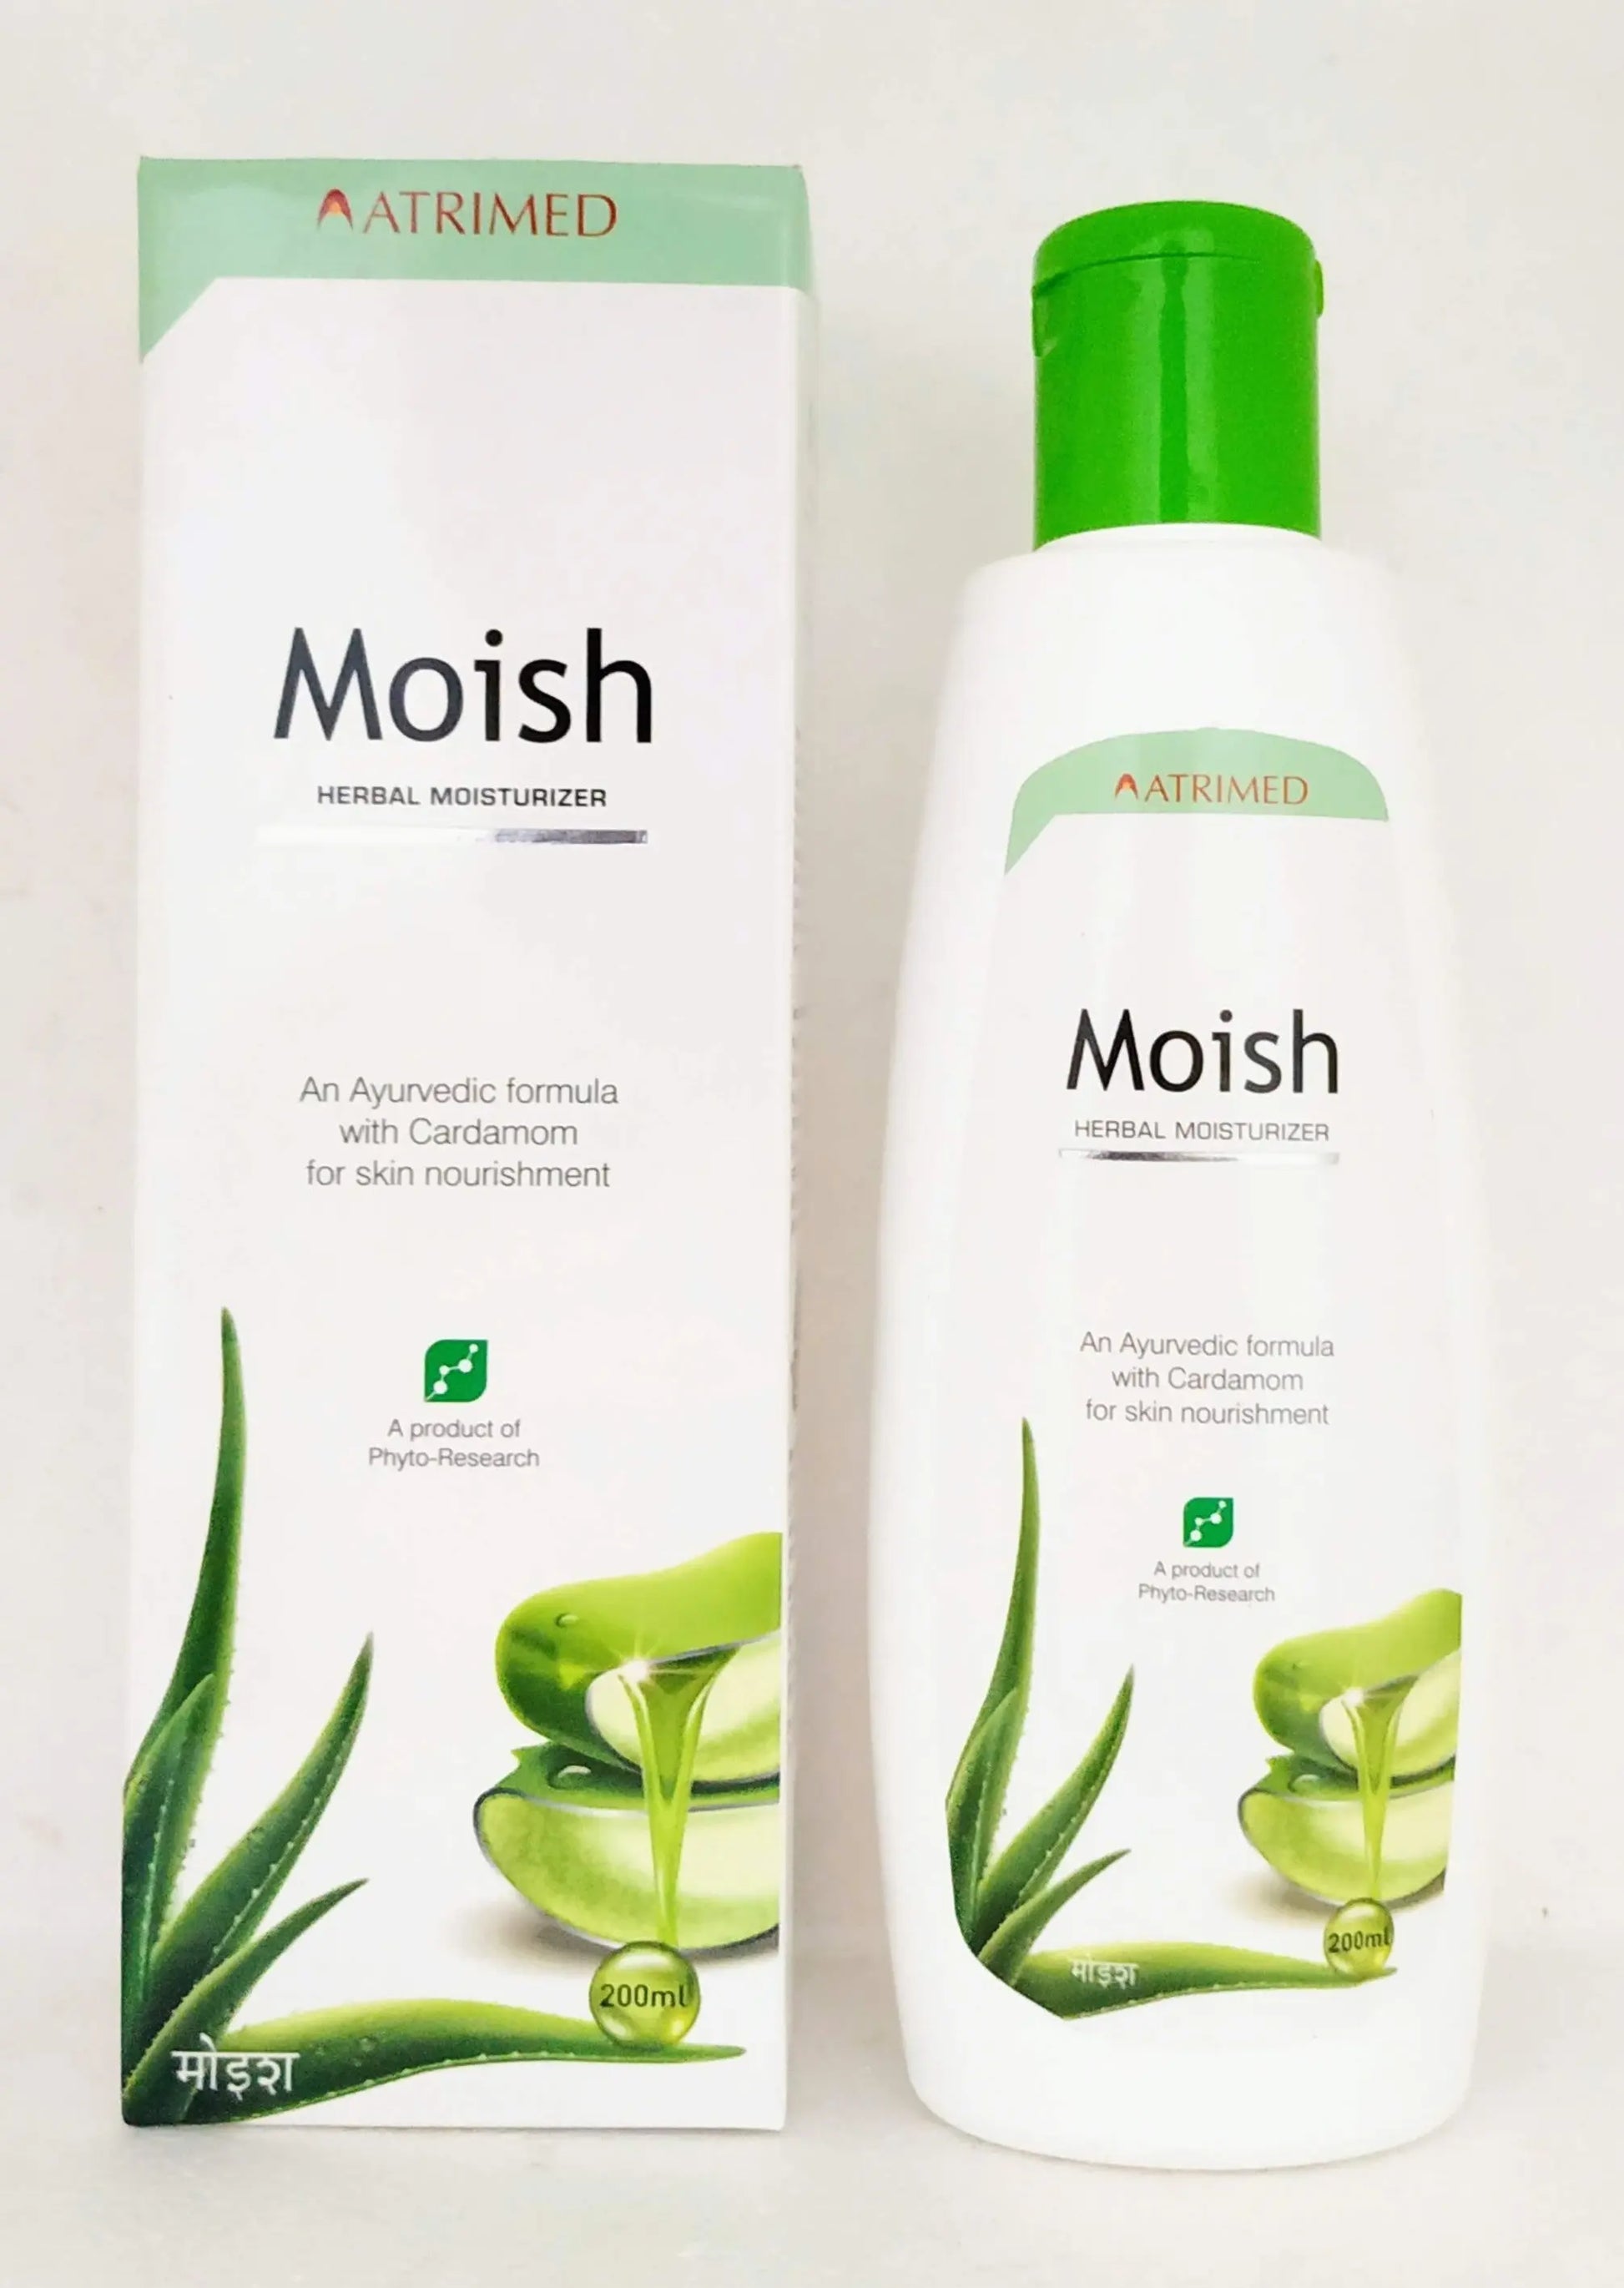 Moish herbal moisturizer 200ml Atrimed